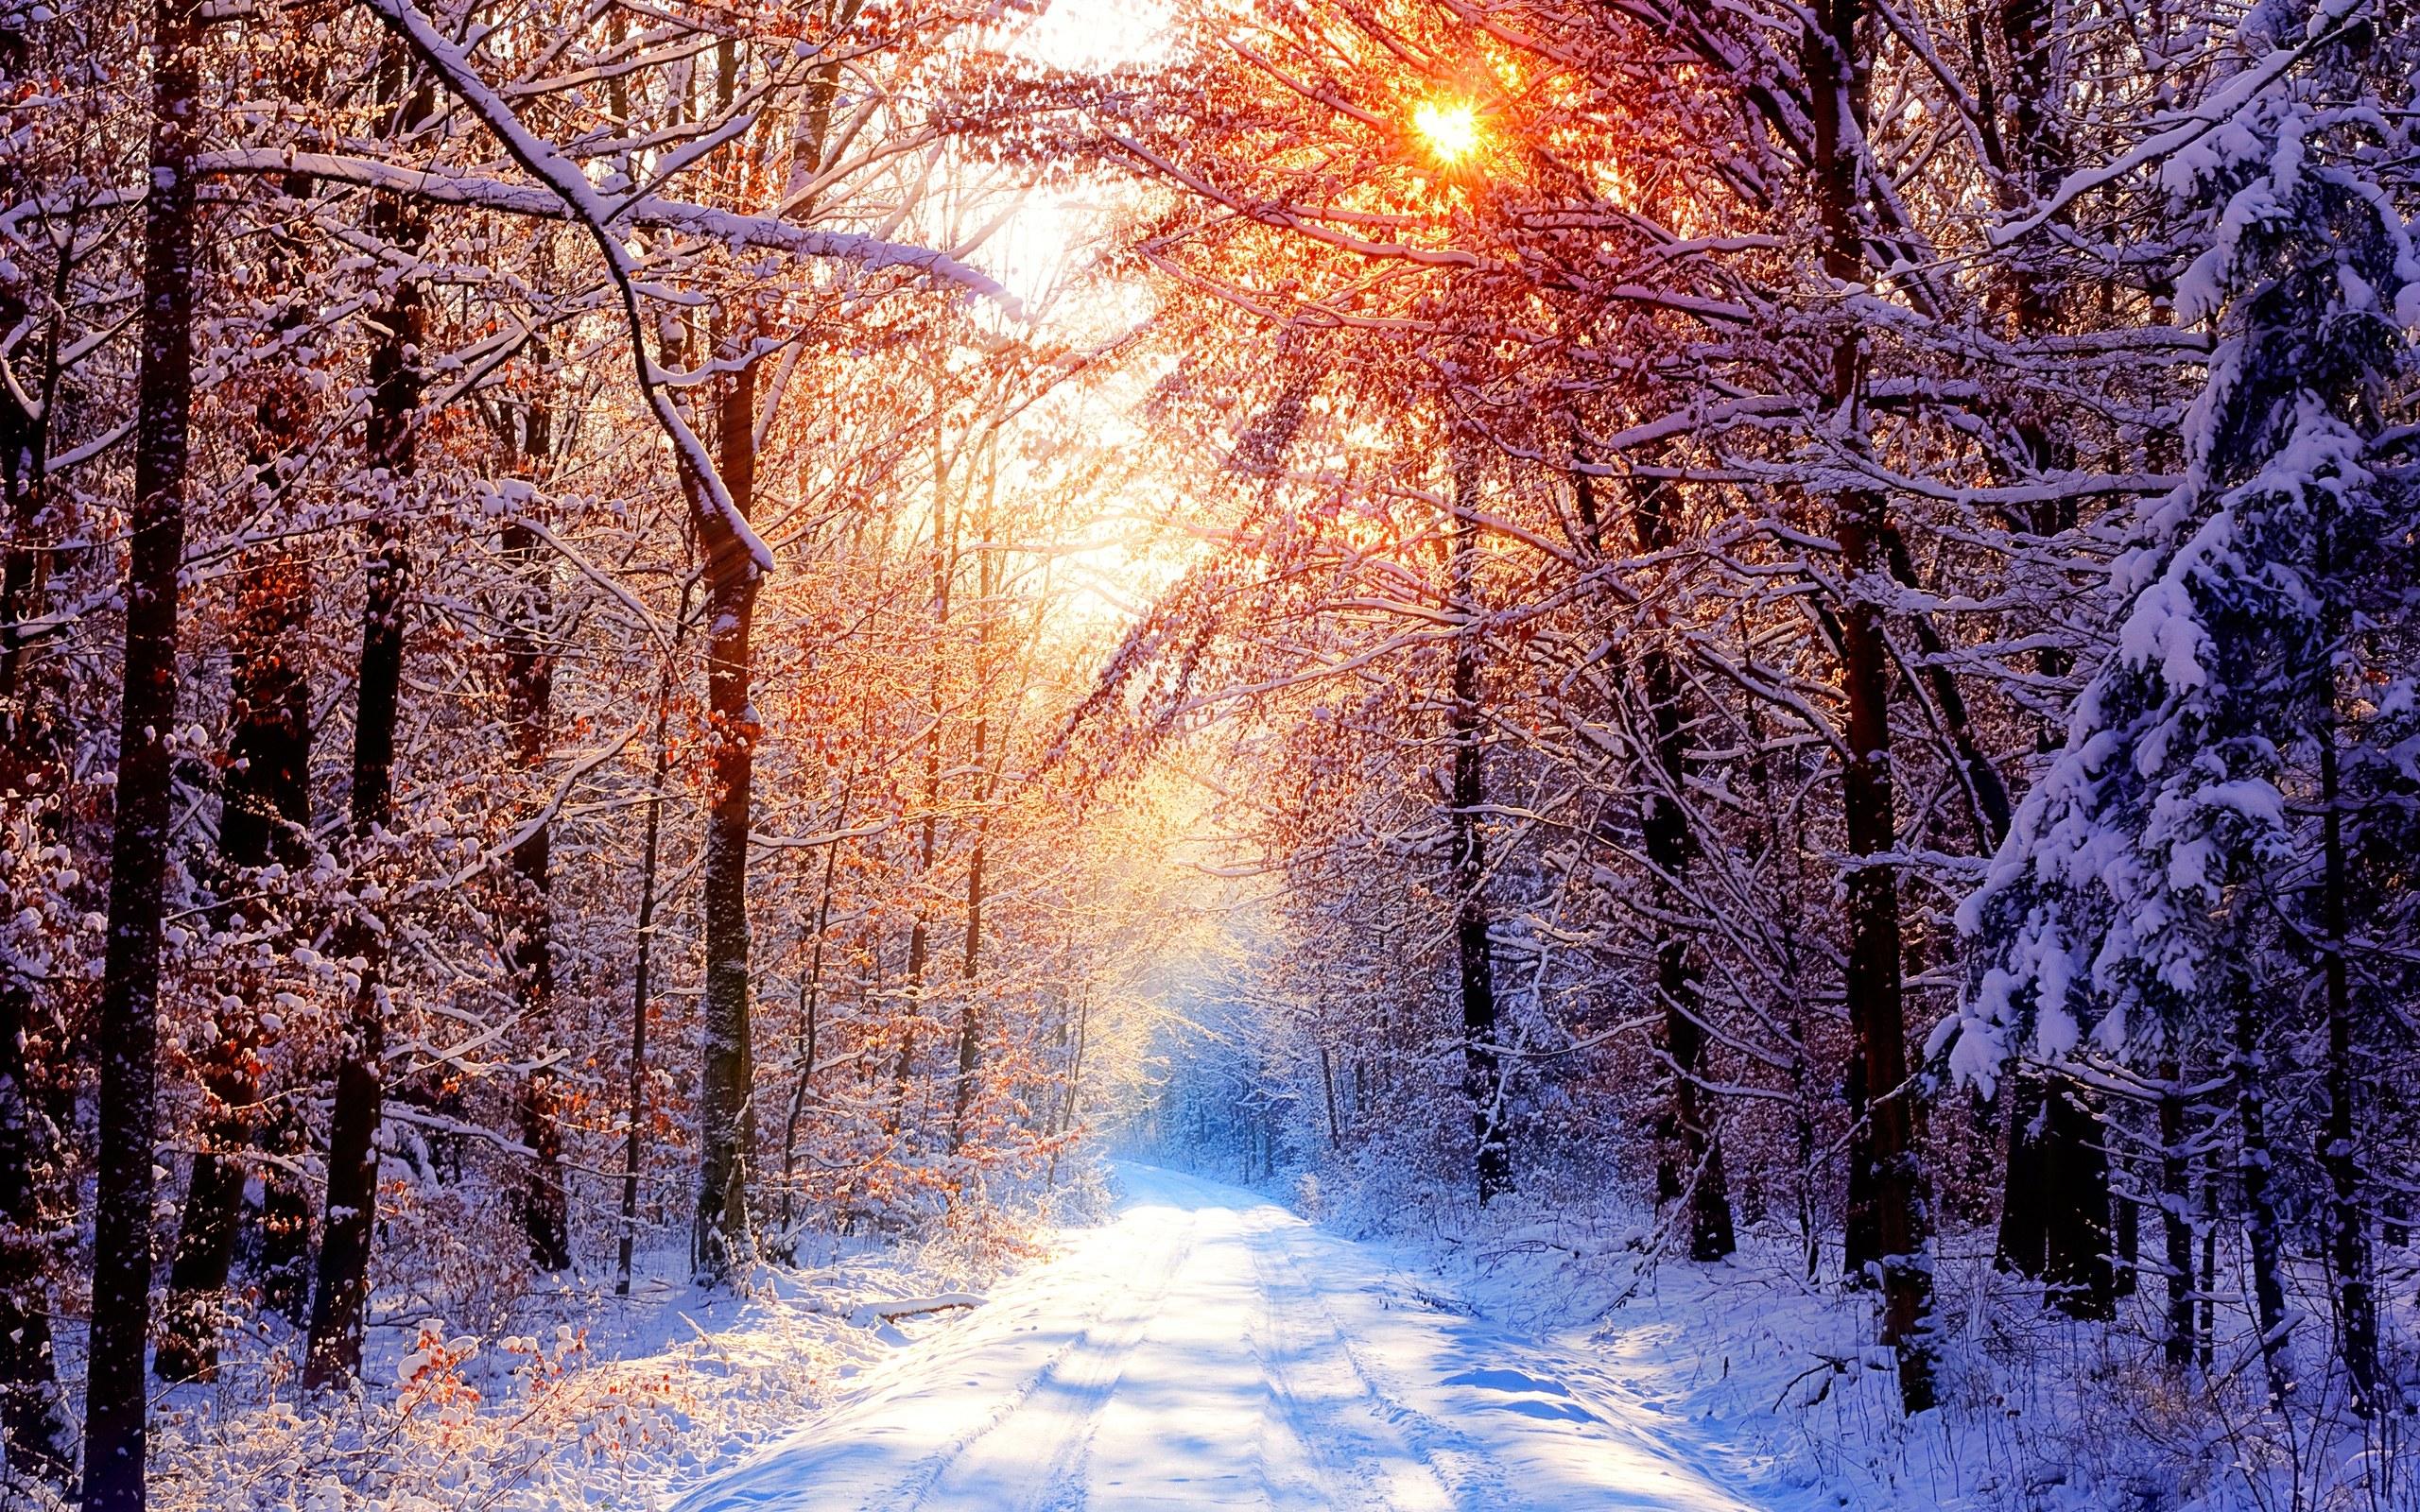 Snowy Path – Adventures in Faith & Art